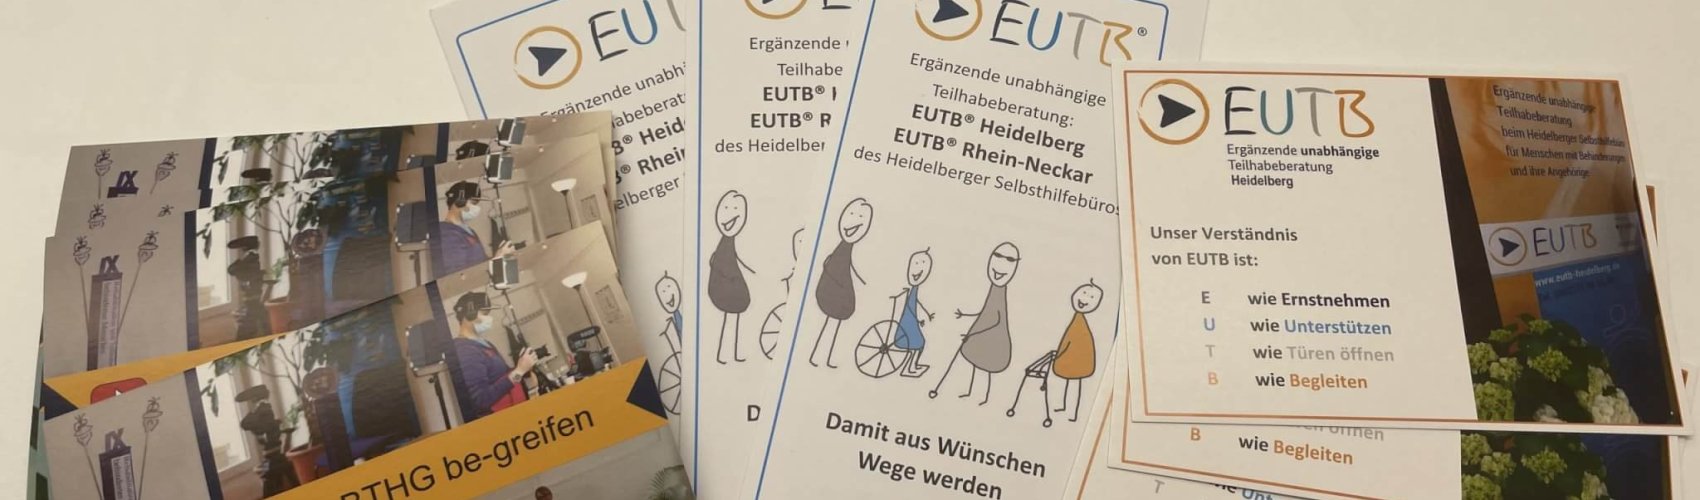 Zu sehen sind Postkarten und Flyer der EUTB Heidelberg und Rhein Neckar